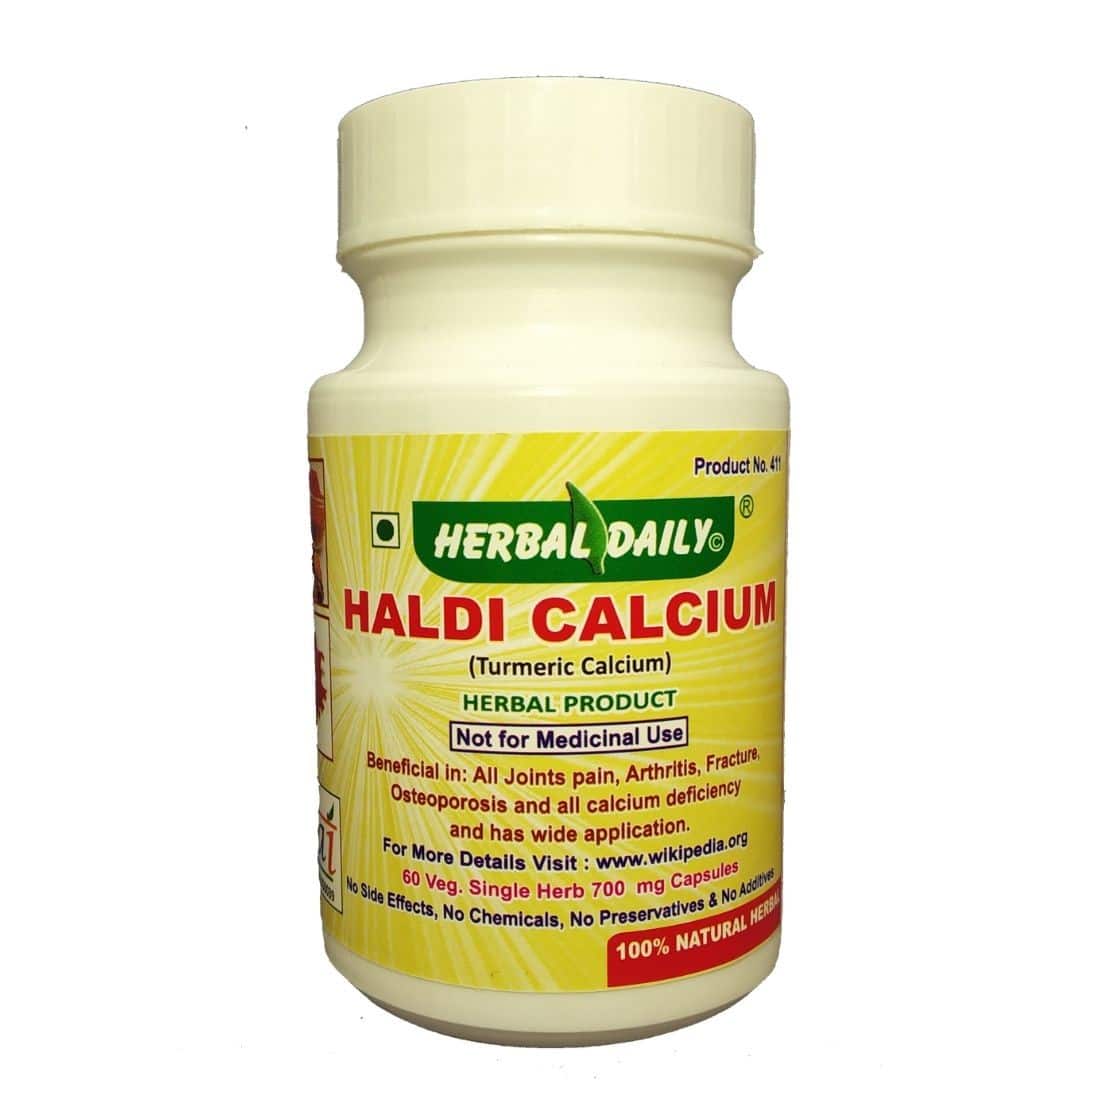 Herbal Daily Haldi Calcium (Turmeric Calcium)